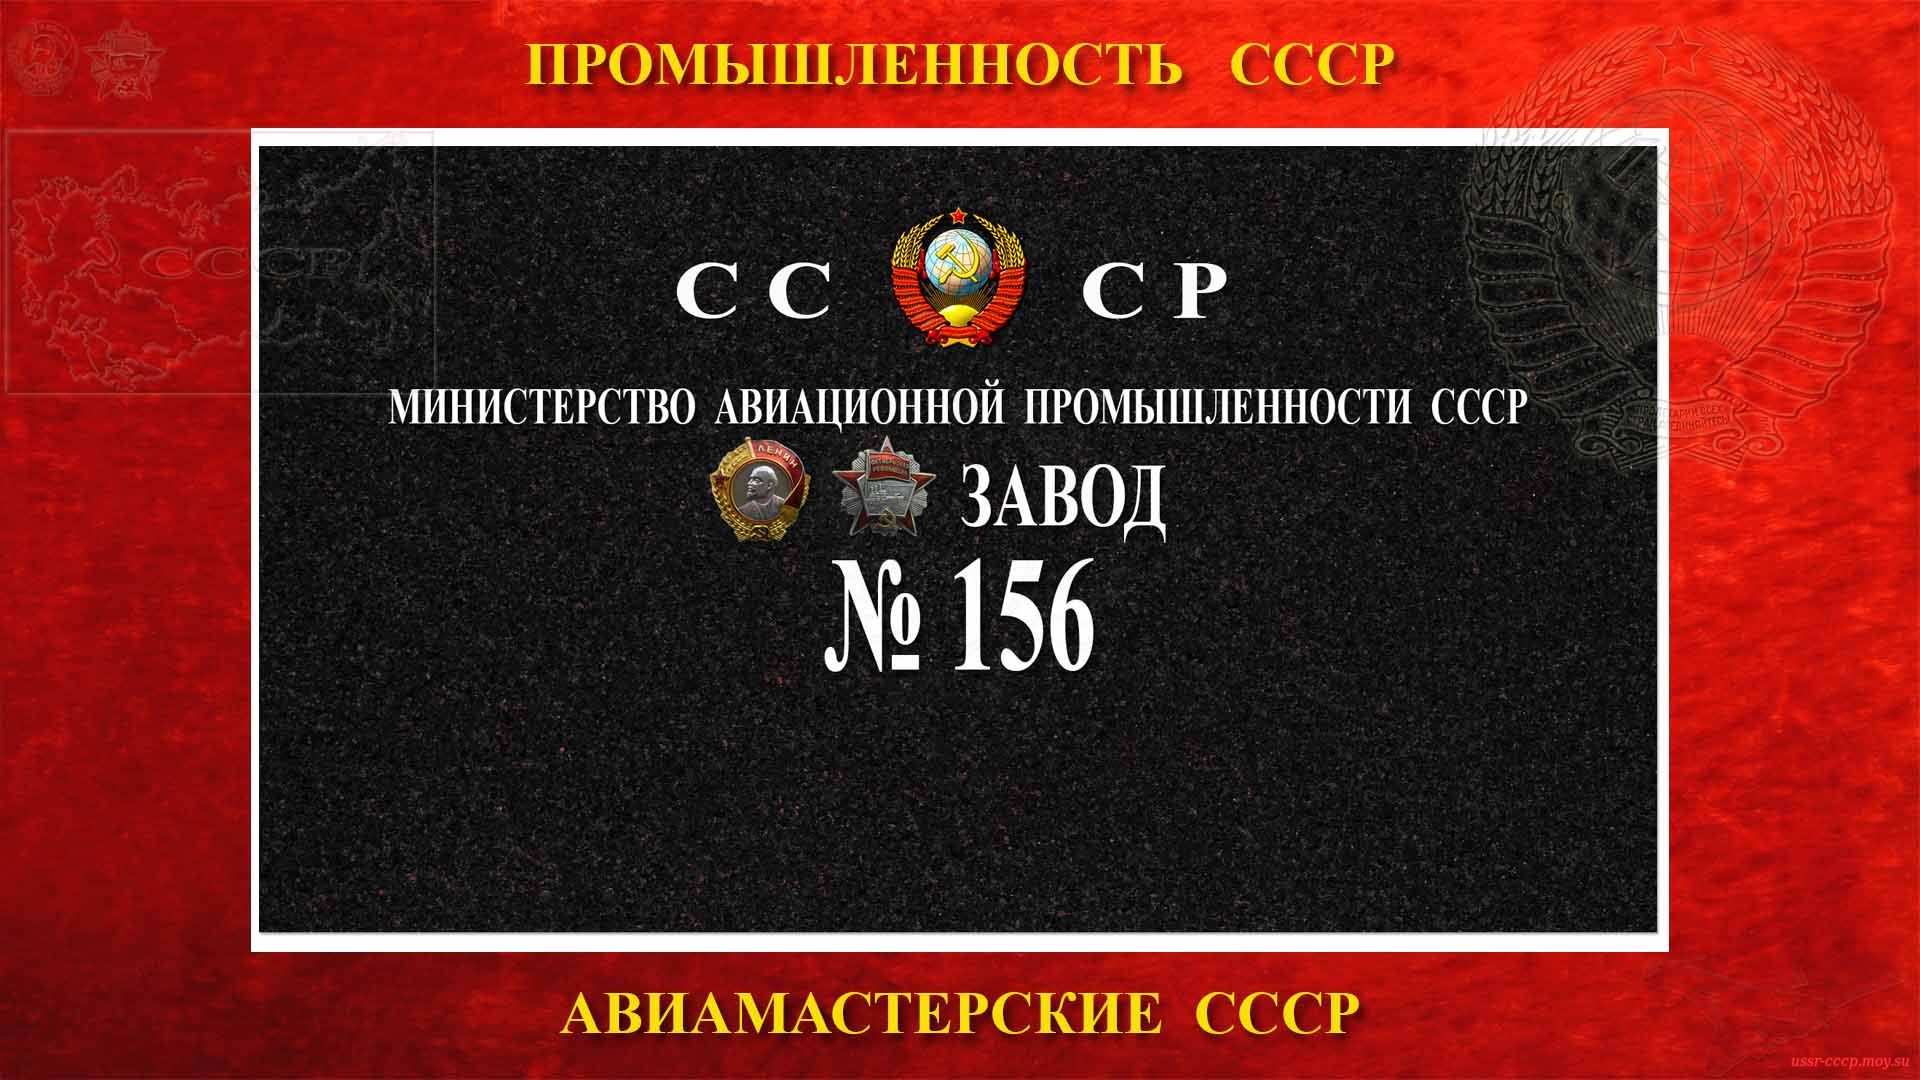 Ордена Ленина и ордена Октябрьской Революции Завод №156 МАП СССР (1943)